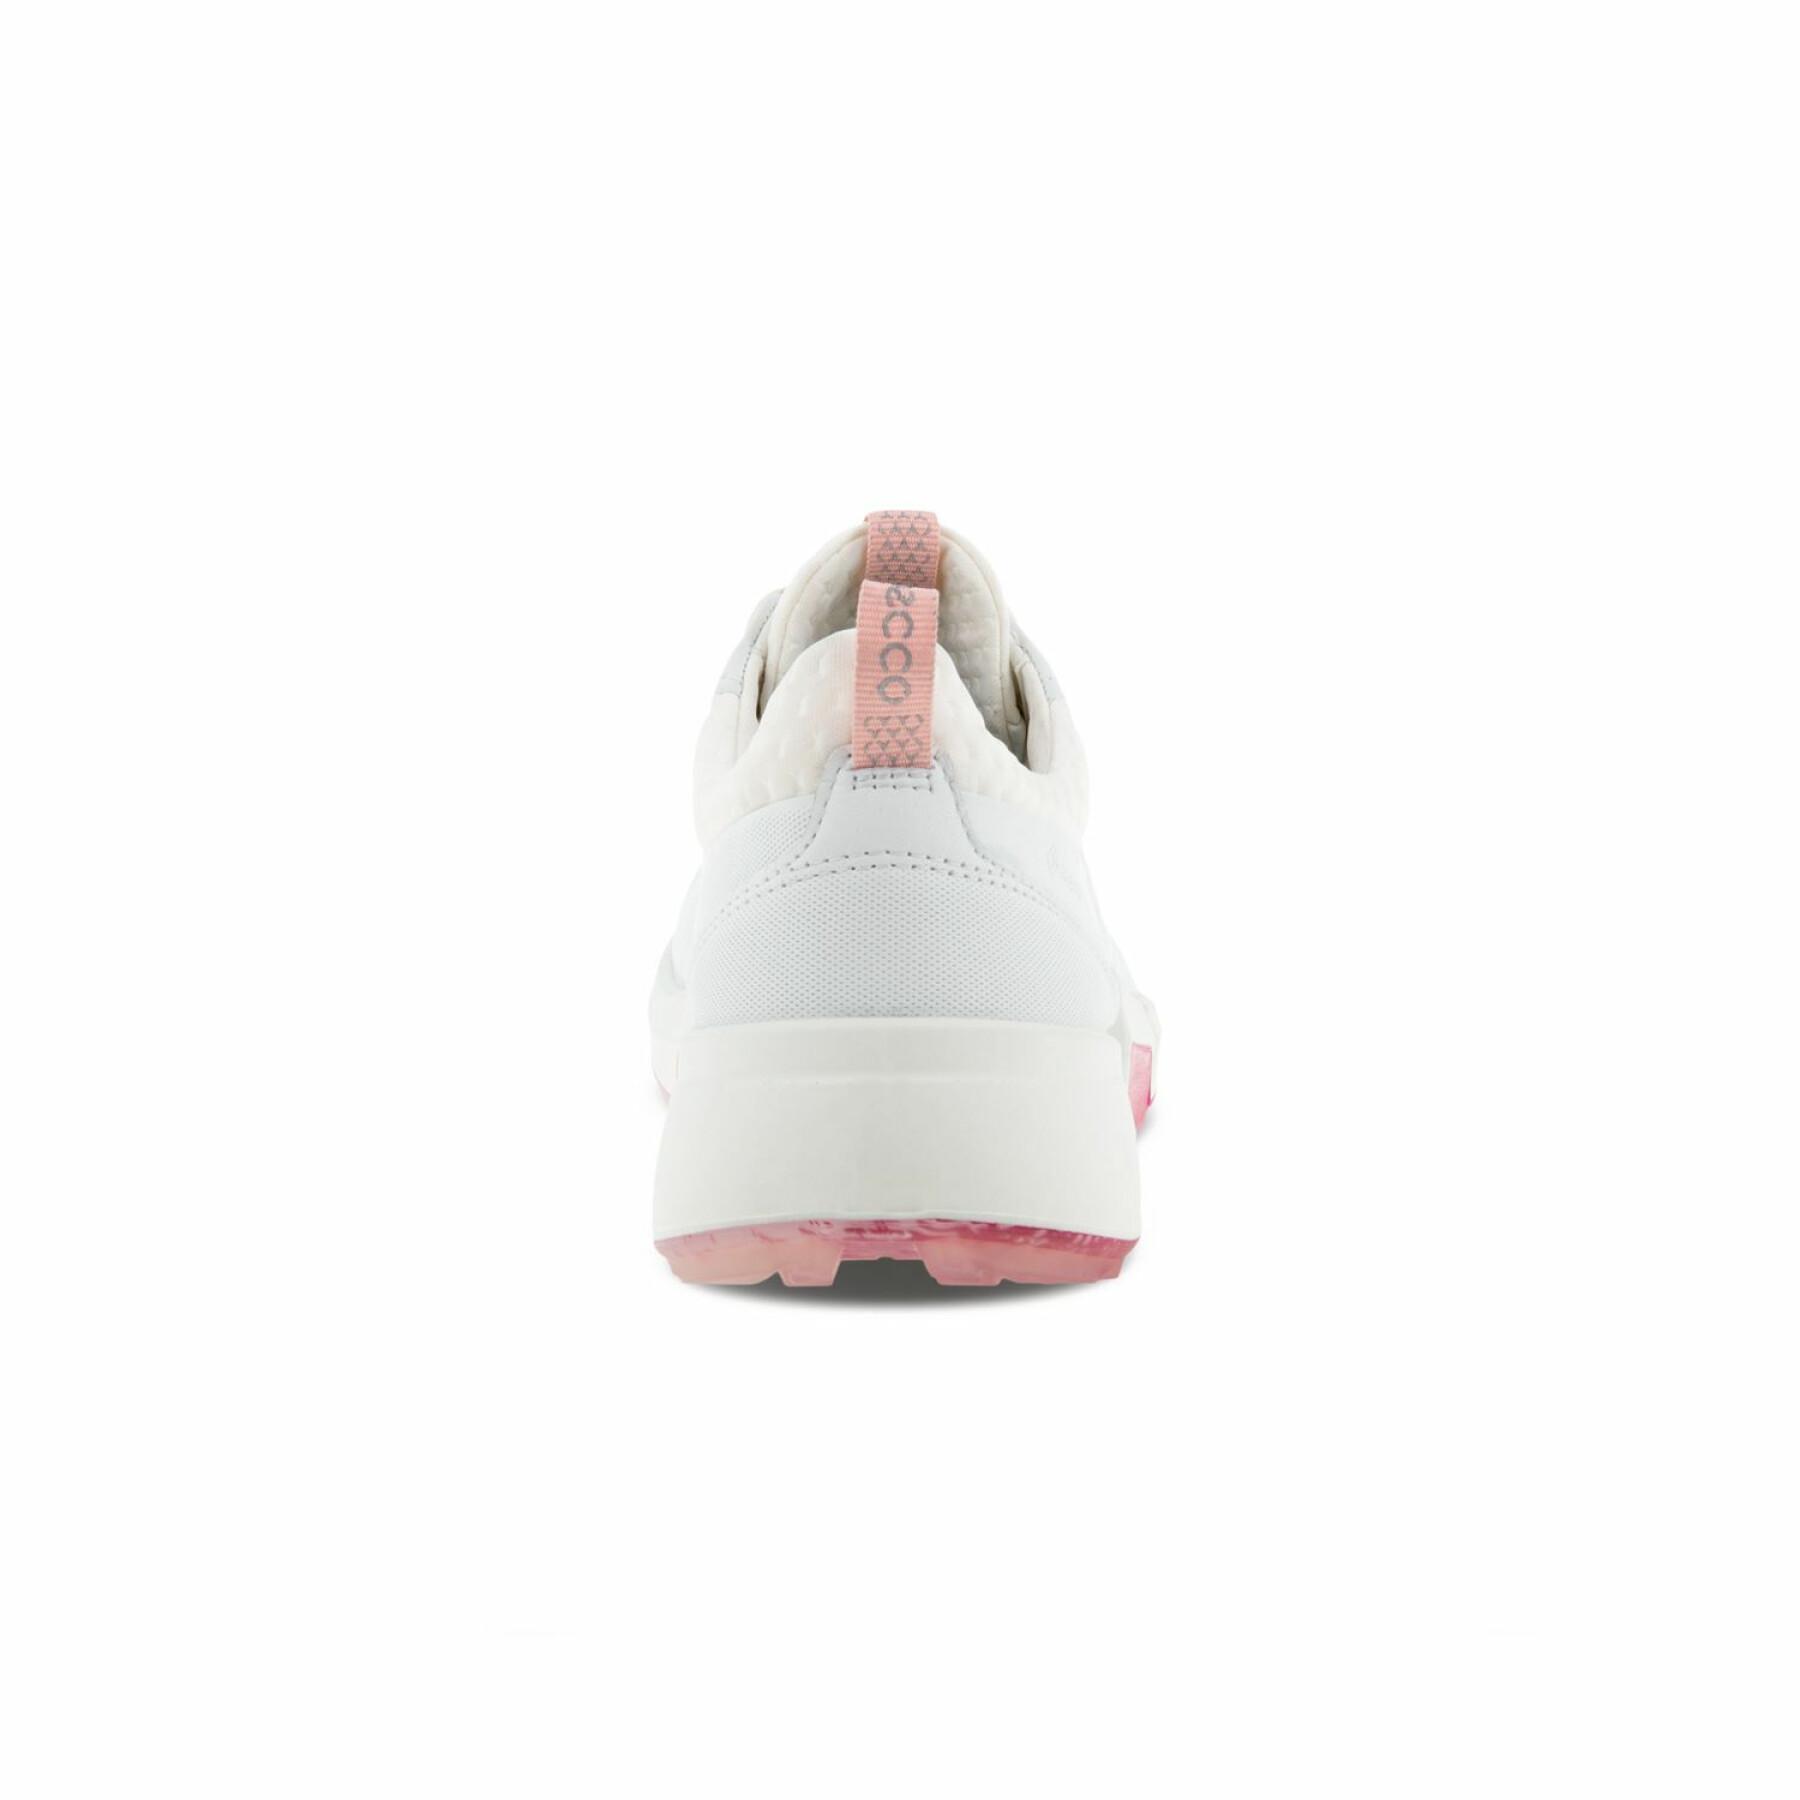 Women's golf shoes Ecco Biom H4